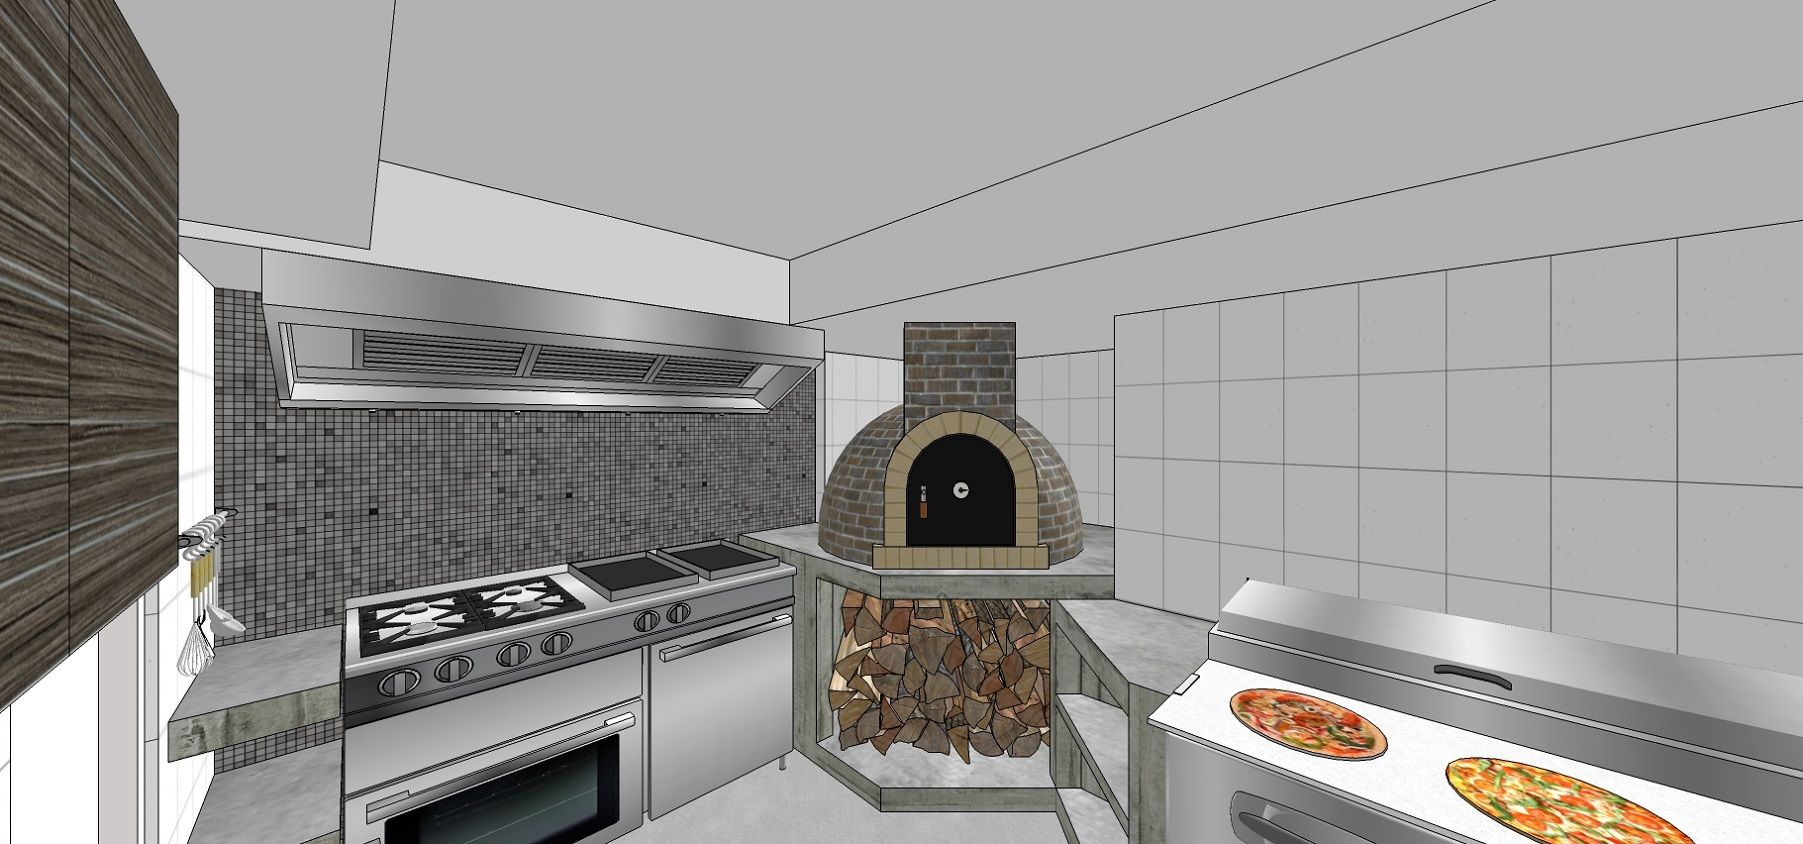 Área de preparación de pizzas y comida. Detalle del horno a la leña MARATEA estudio Espacios comerciales Ladrillos Locales gastronómicos